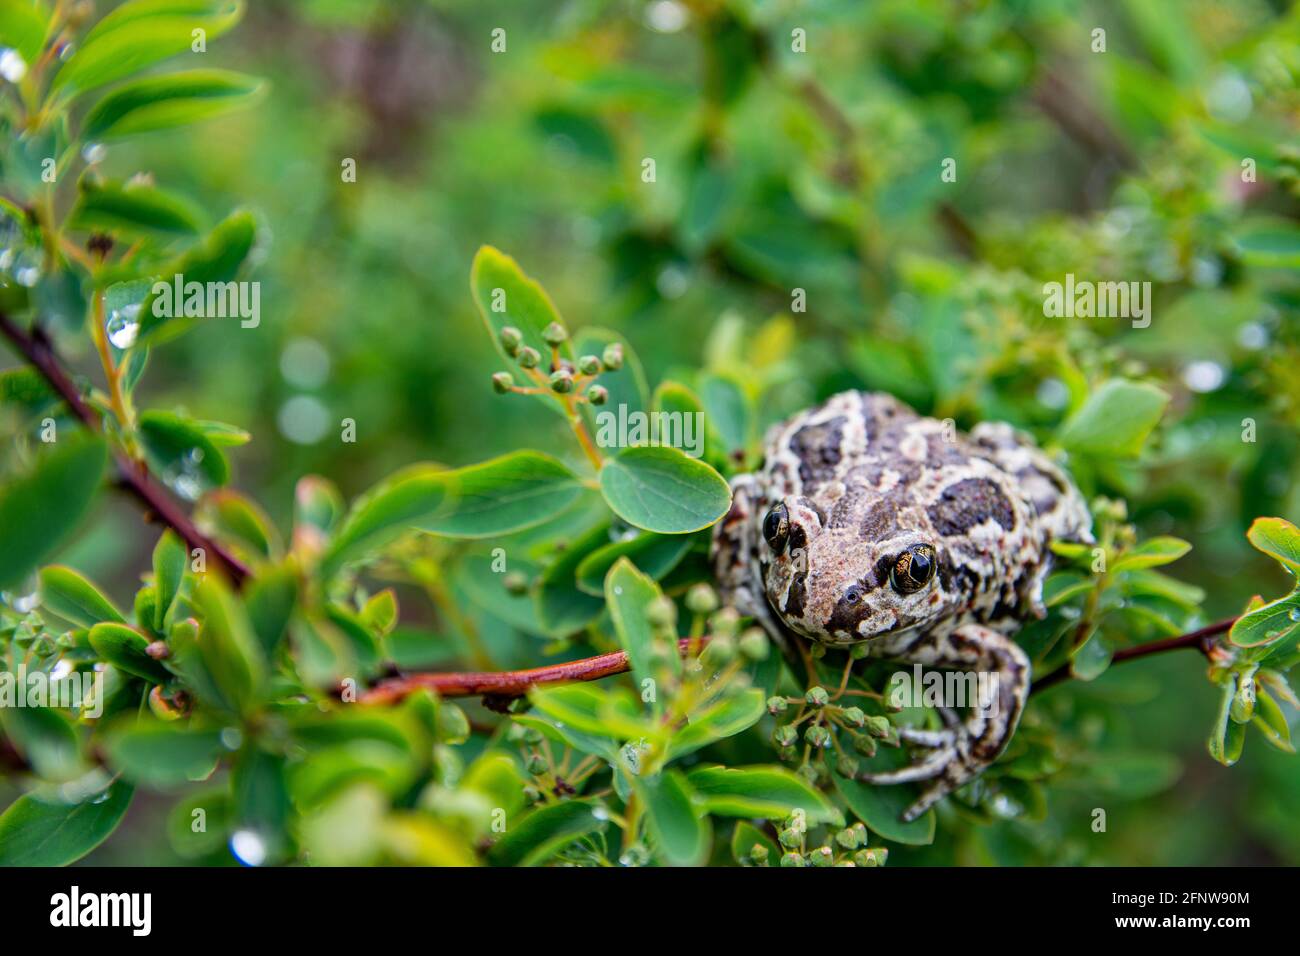 La grenouille brune commune européenne se trouve dans des feuilles vertes sur la branche de l'arbre après la pluie. Rana temporaria gros plan. Banque D'Images